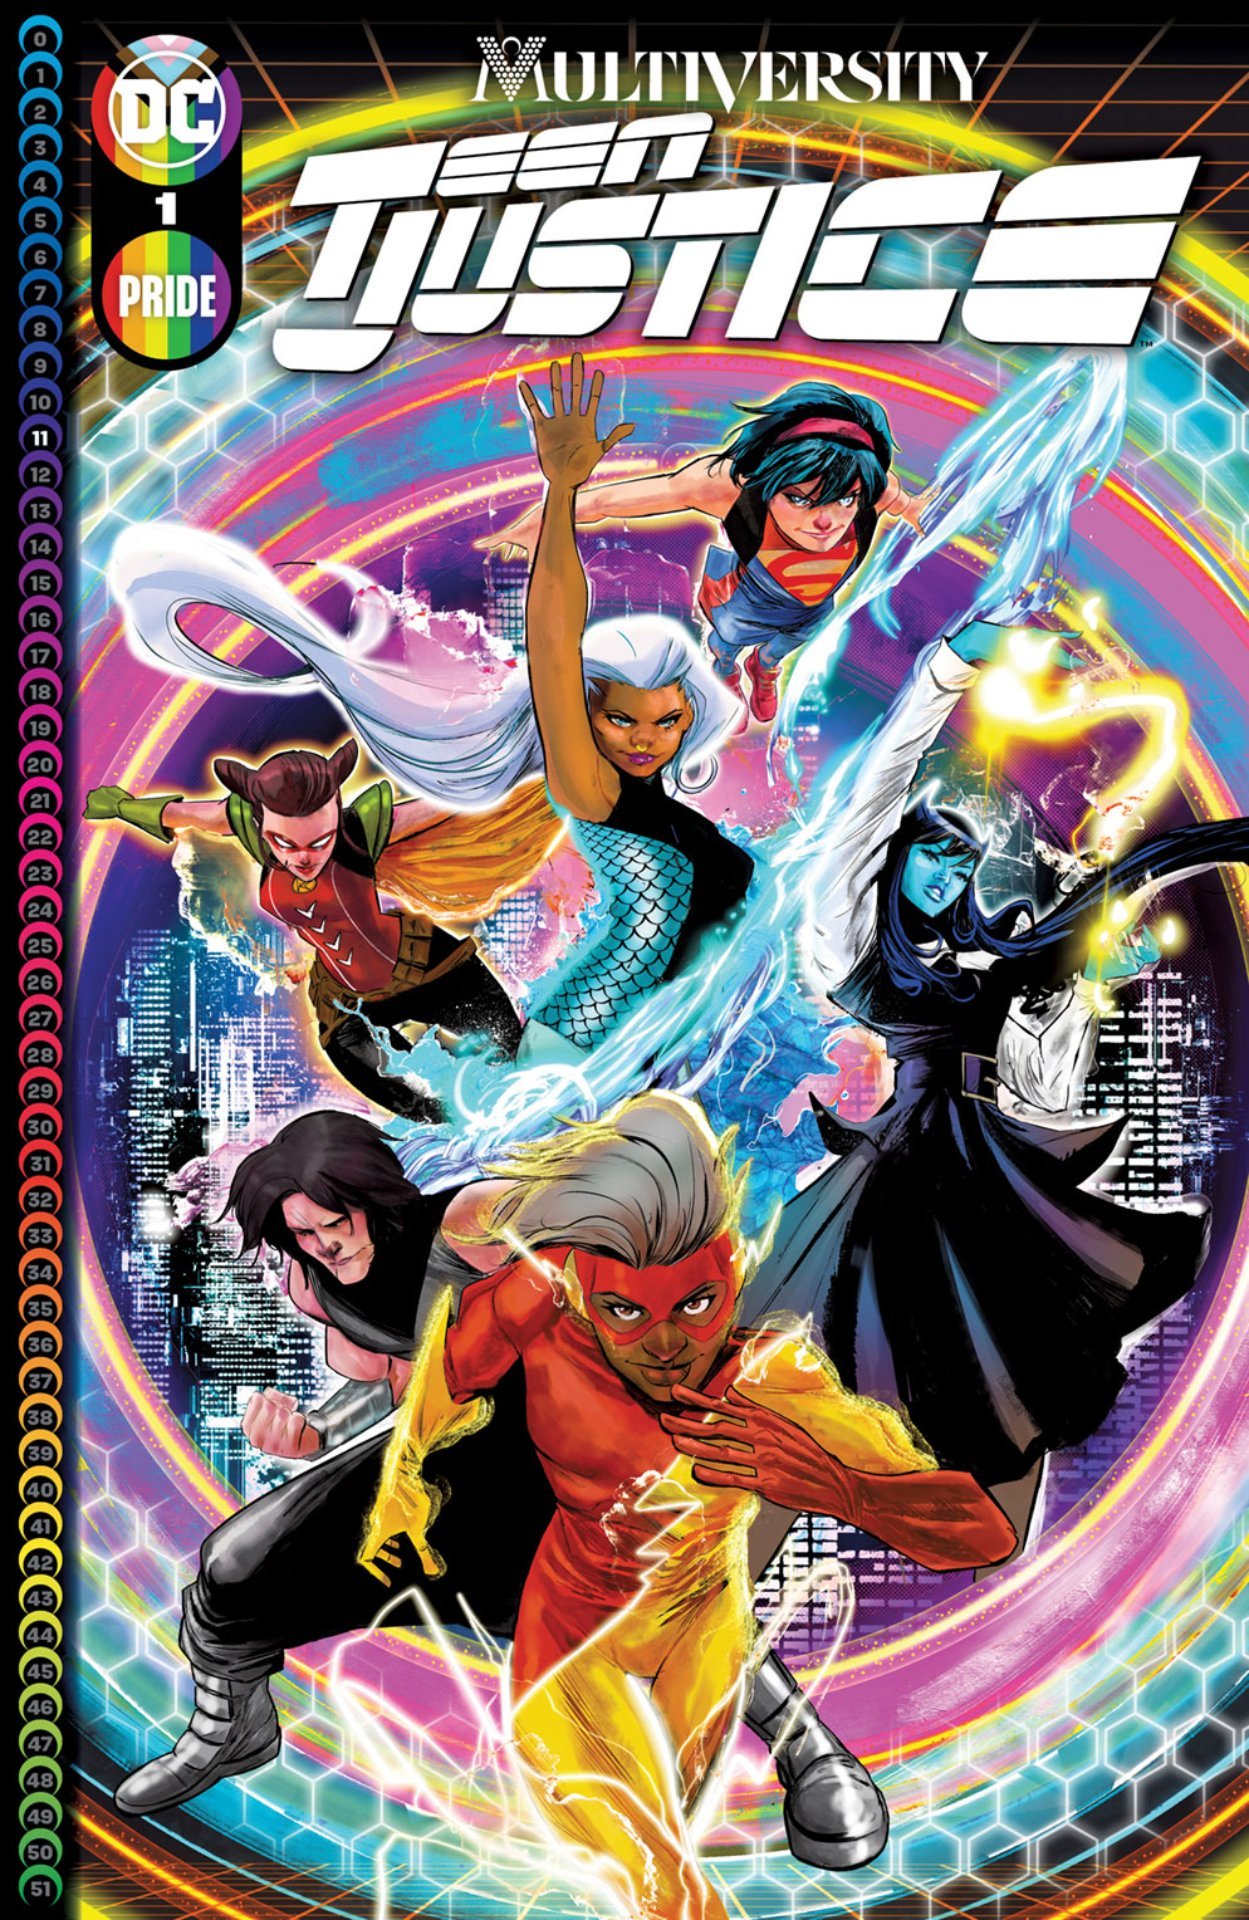 Cover di Multiversity: Teen Justice 1 di Robbi Rodriguez, in uscita a giugno per le celebrazioni del Pride DC Comics